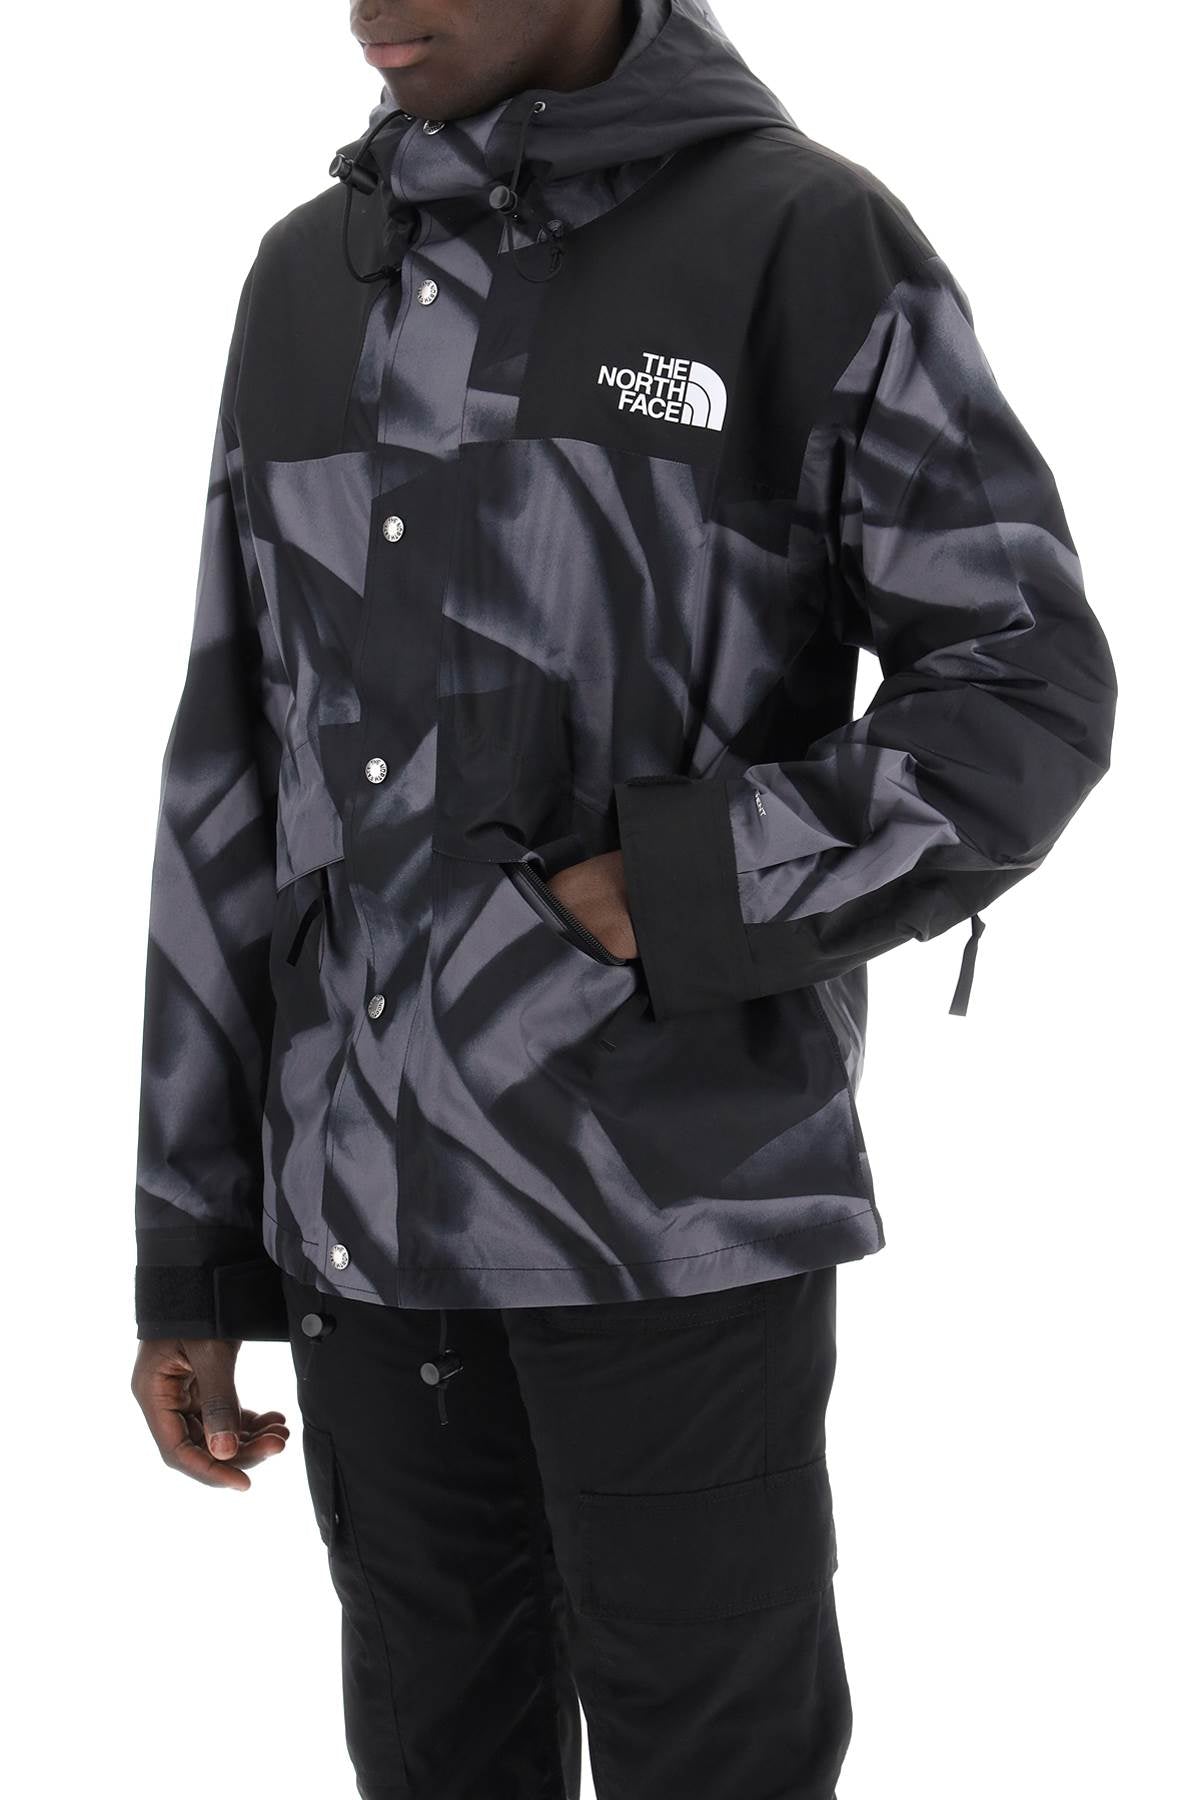 The north face jacket

86 retro mountain windbreaker jacket-3